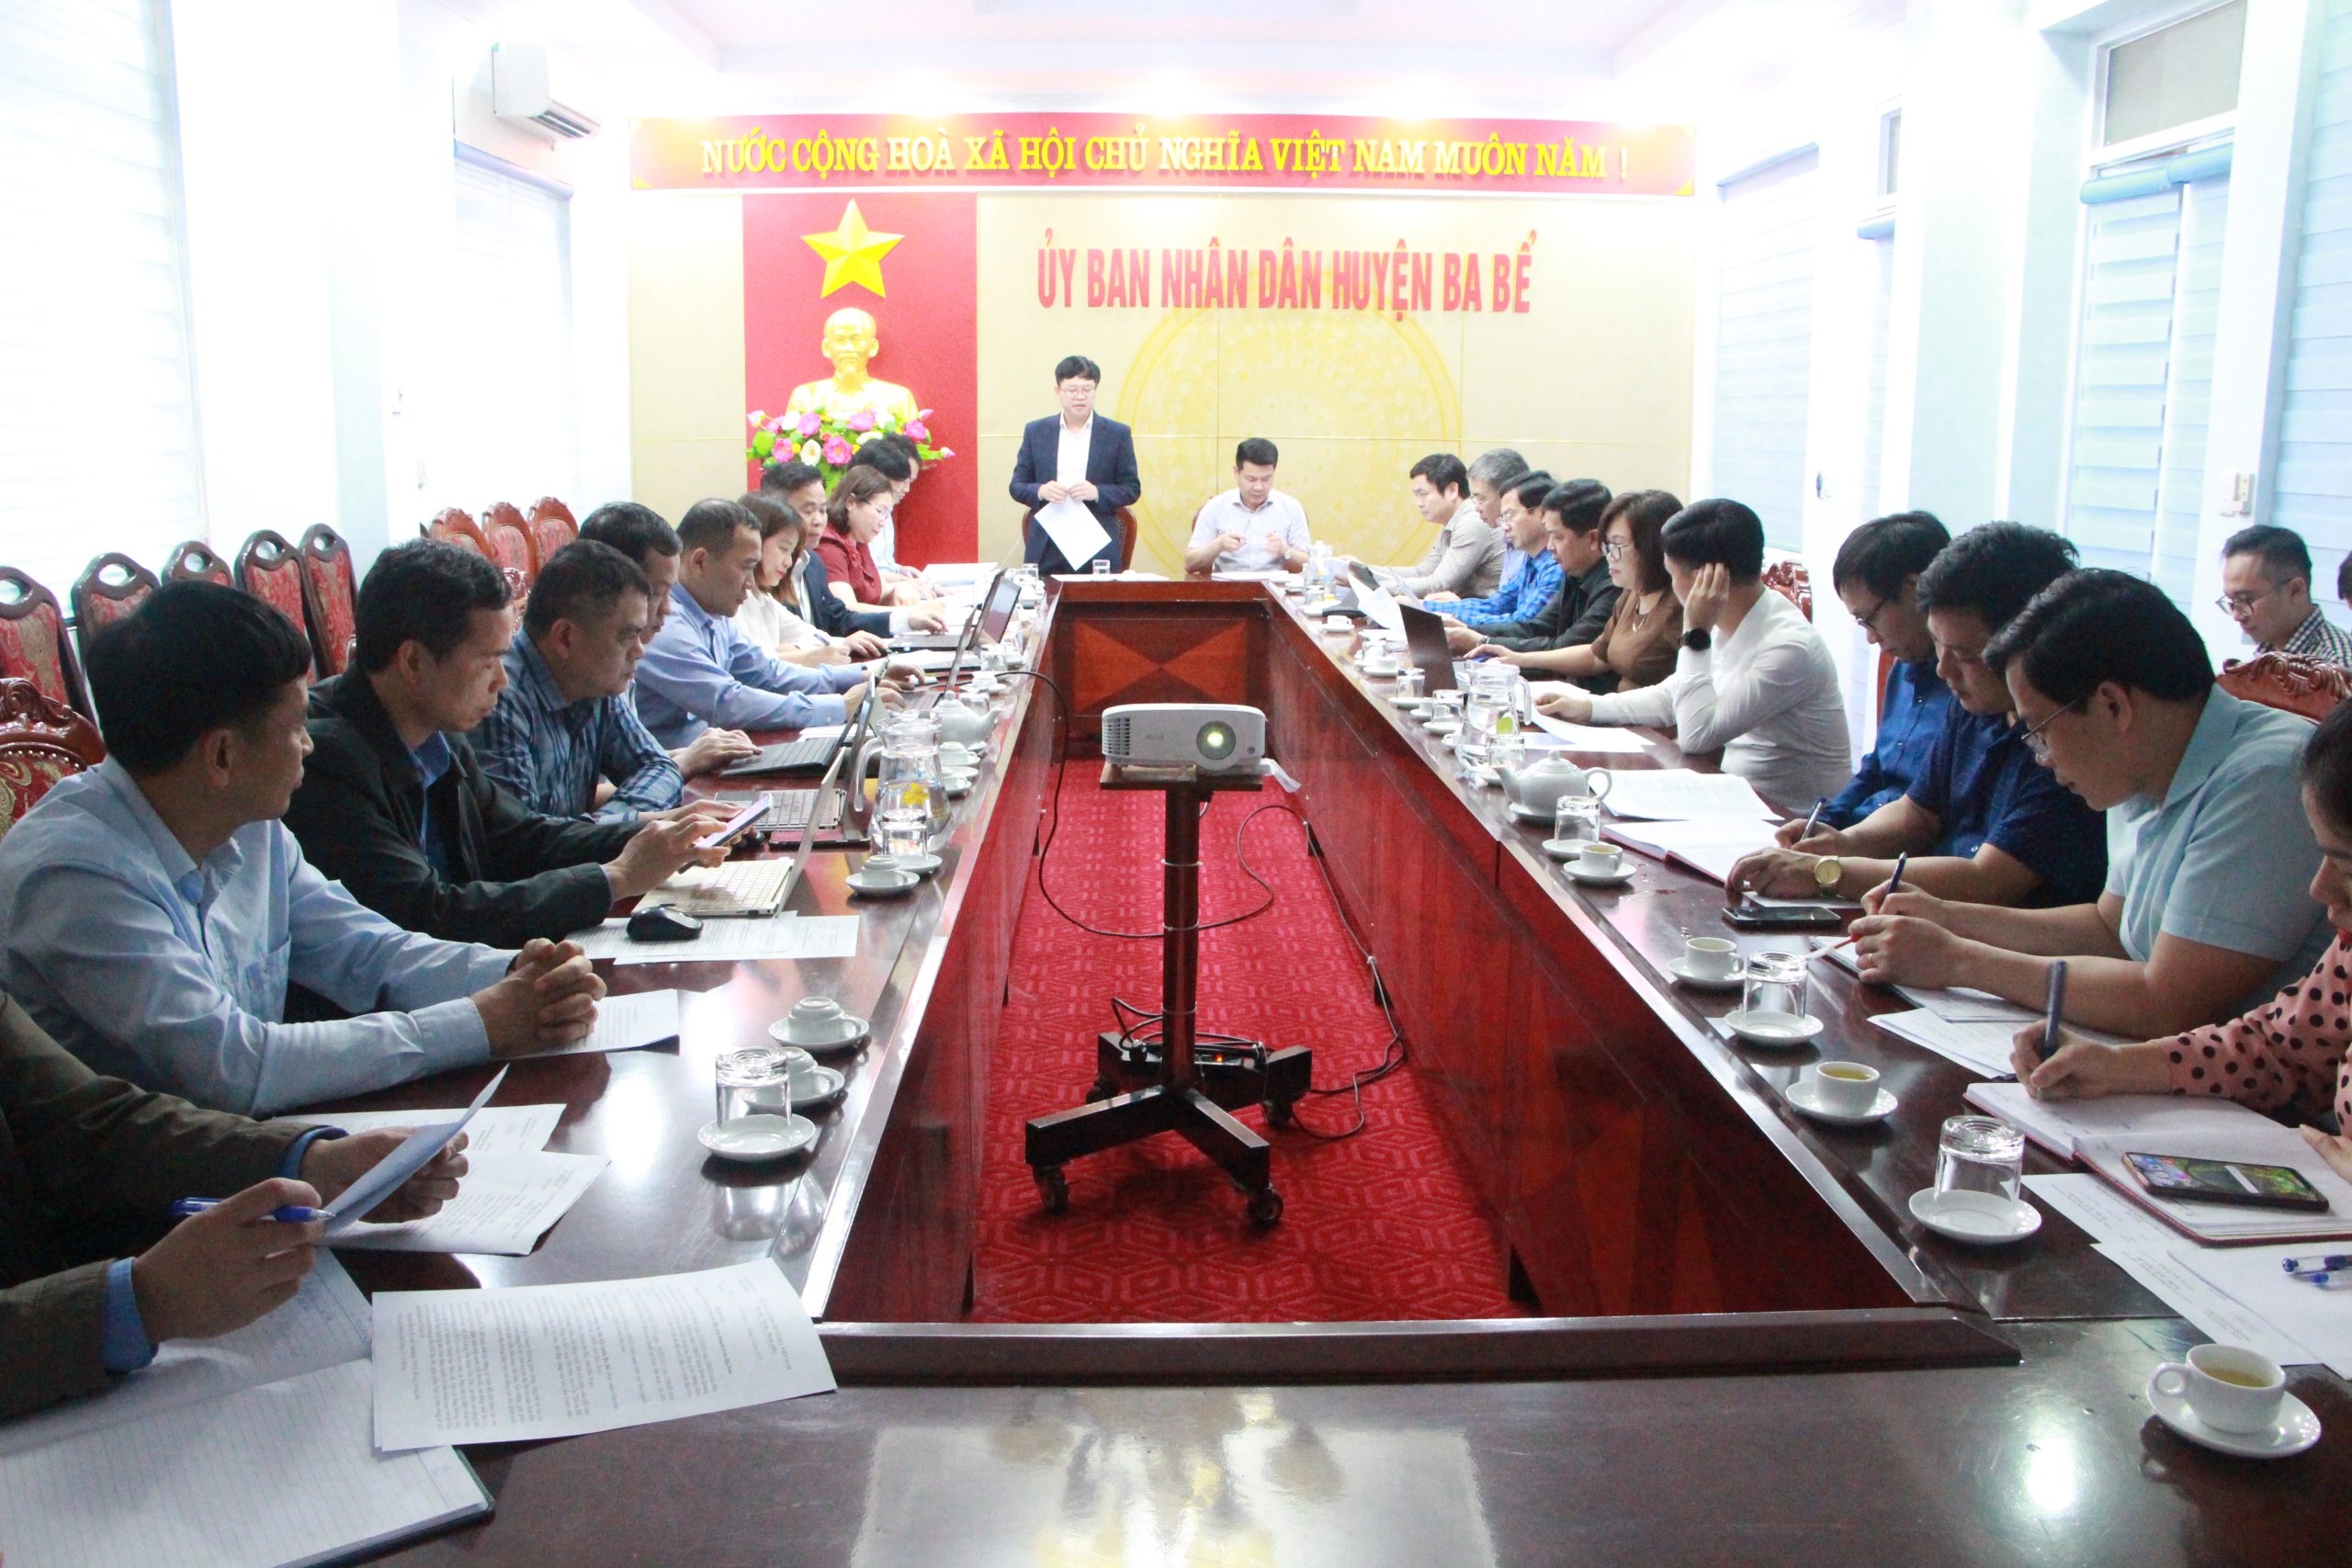 Đoàn công tác của UBND tỉnh làm việc tại huyện Ba Bể